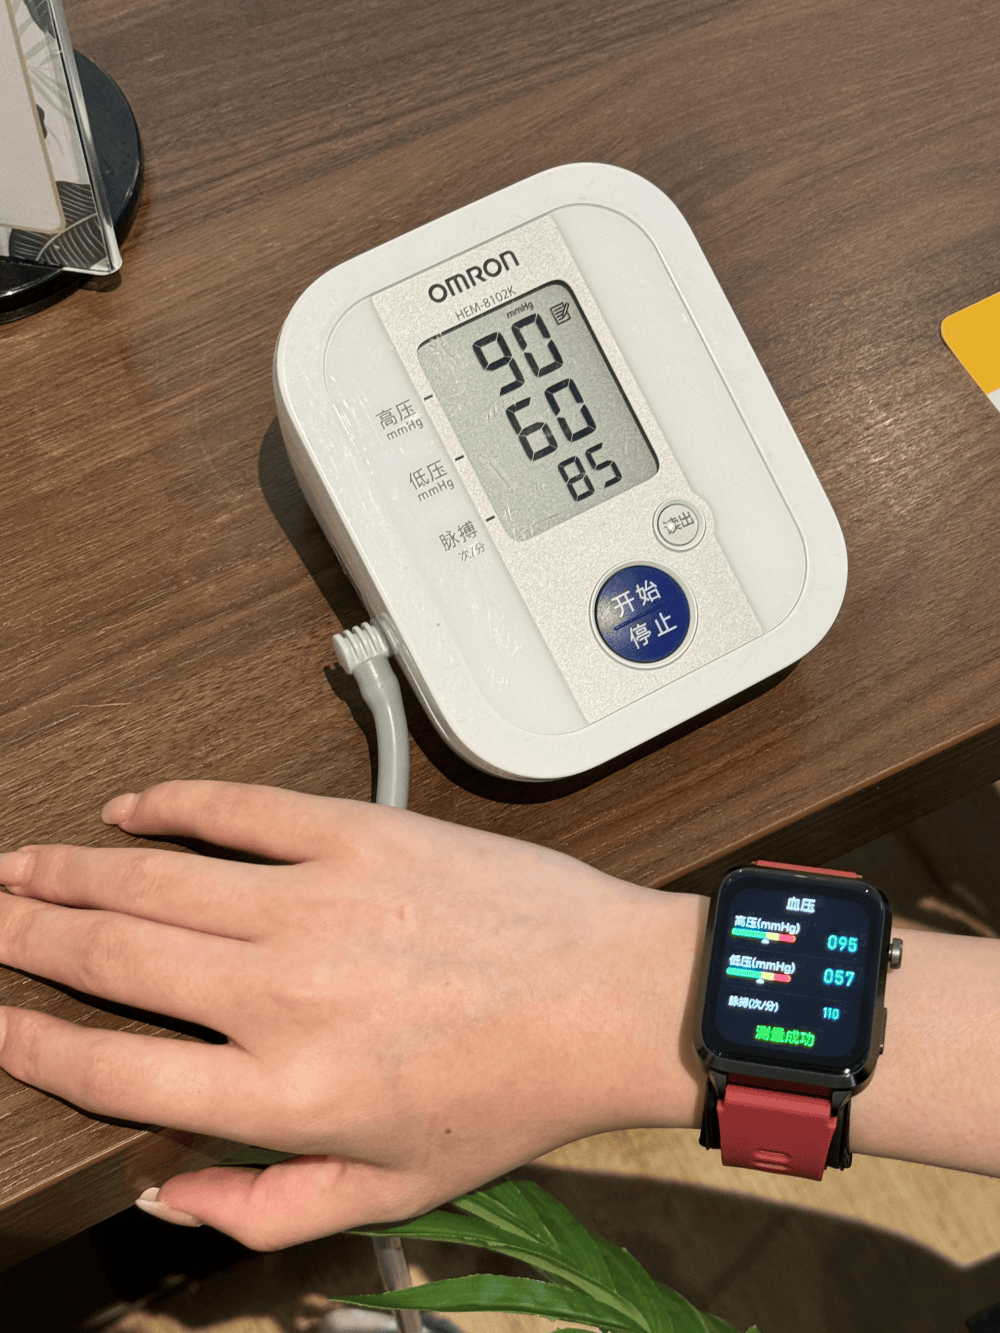 dido气泵血压手表评测:智能健康监测手环推荐